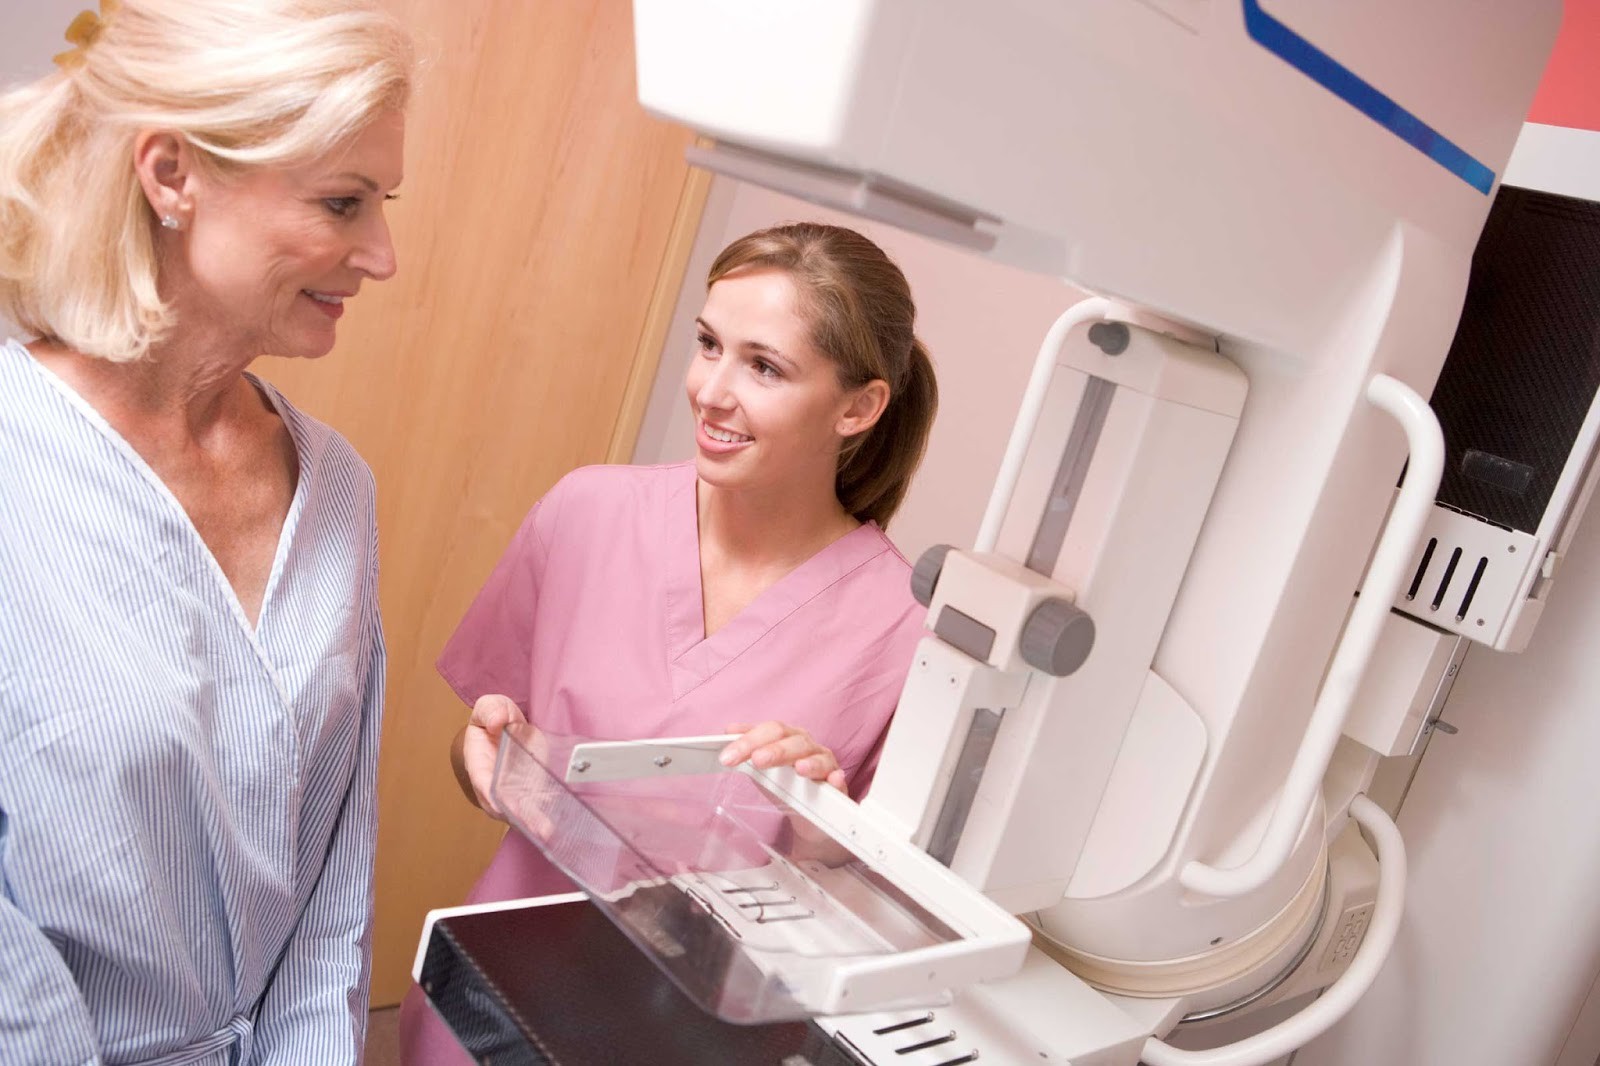 การตรวจแมมโมแกรม (Digital Mammogram)